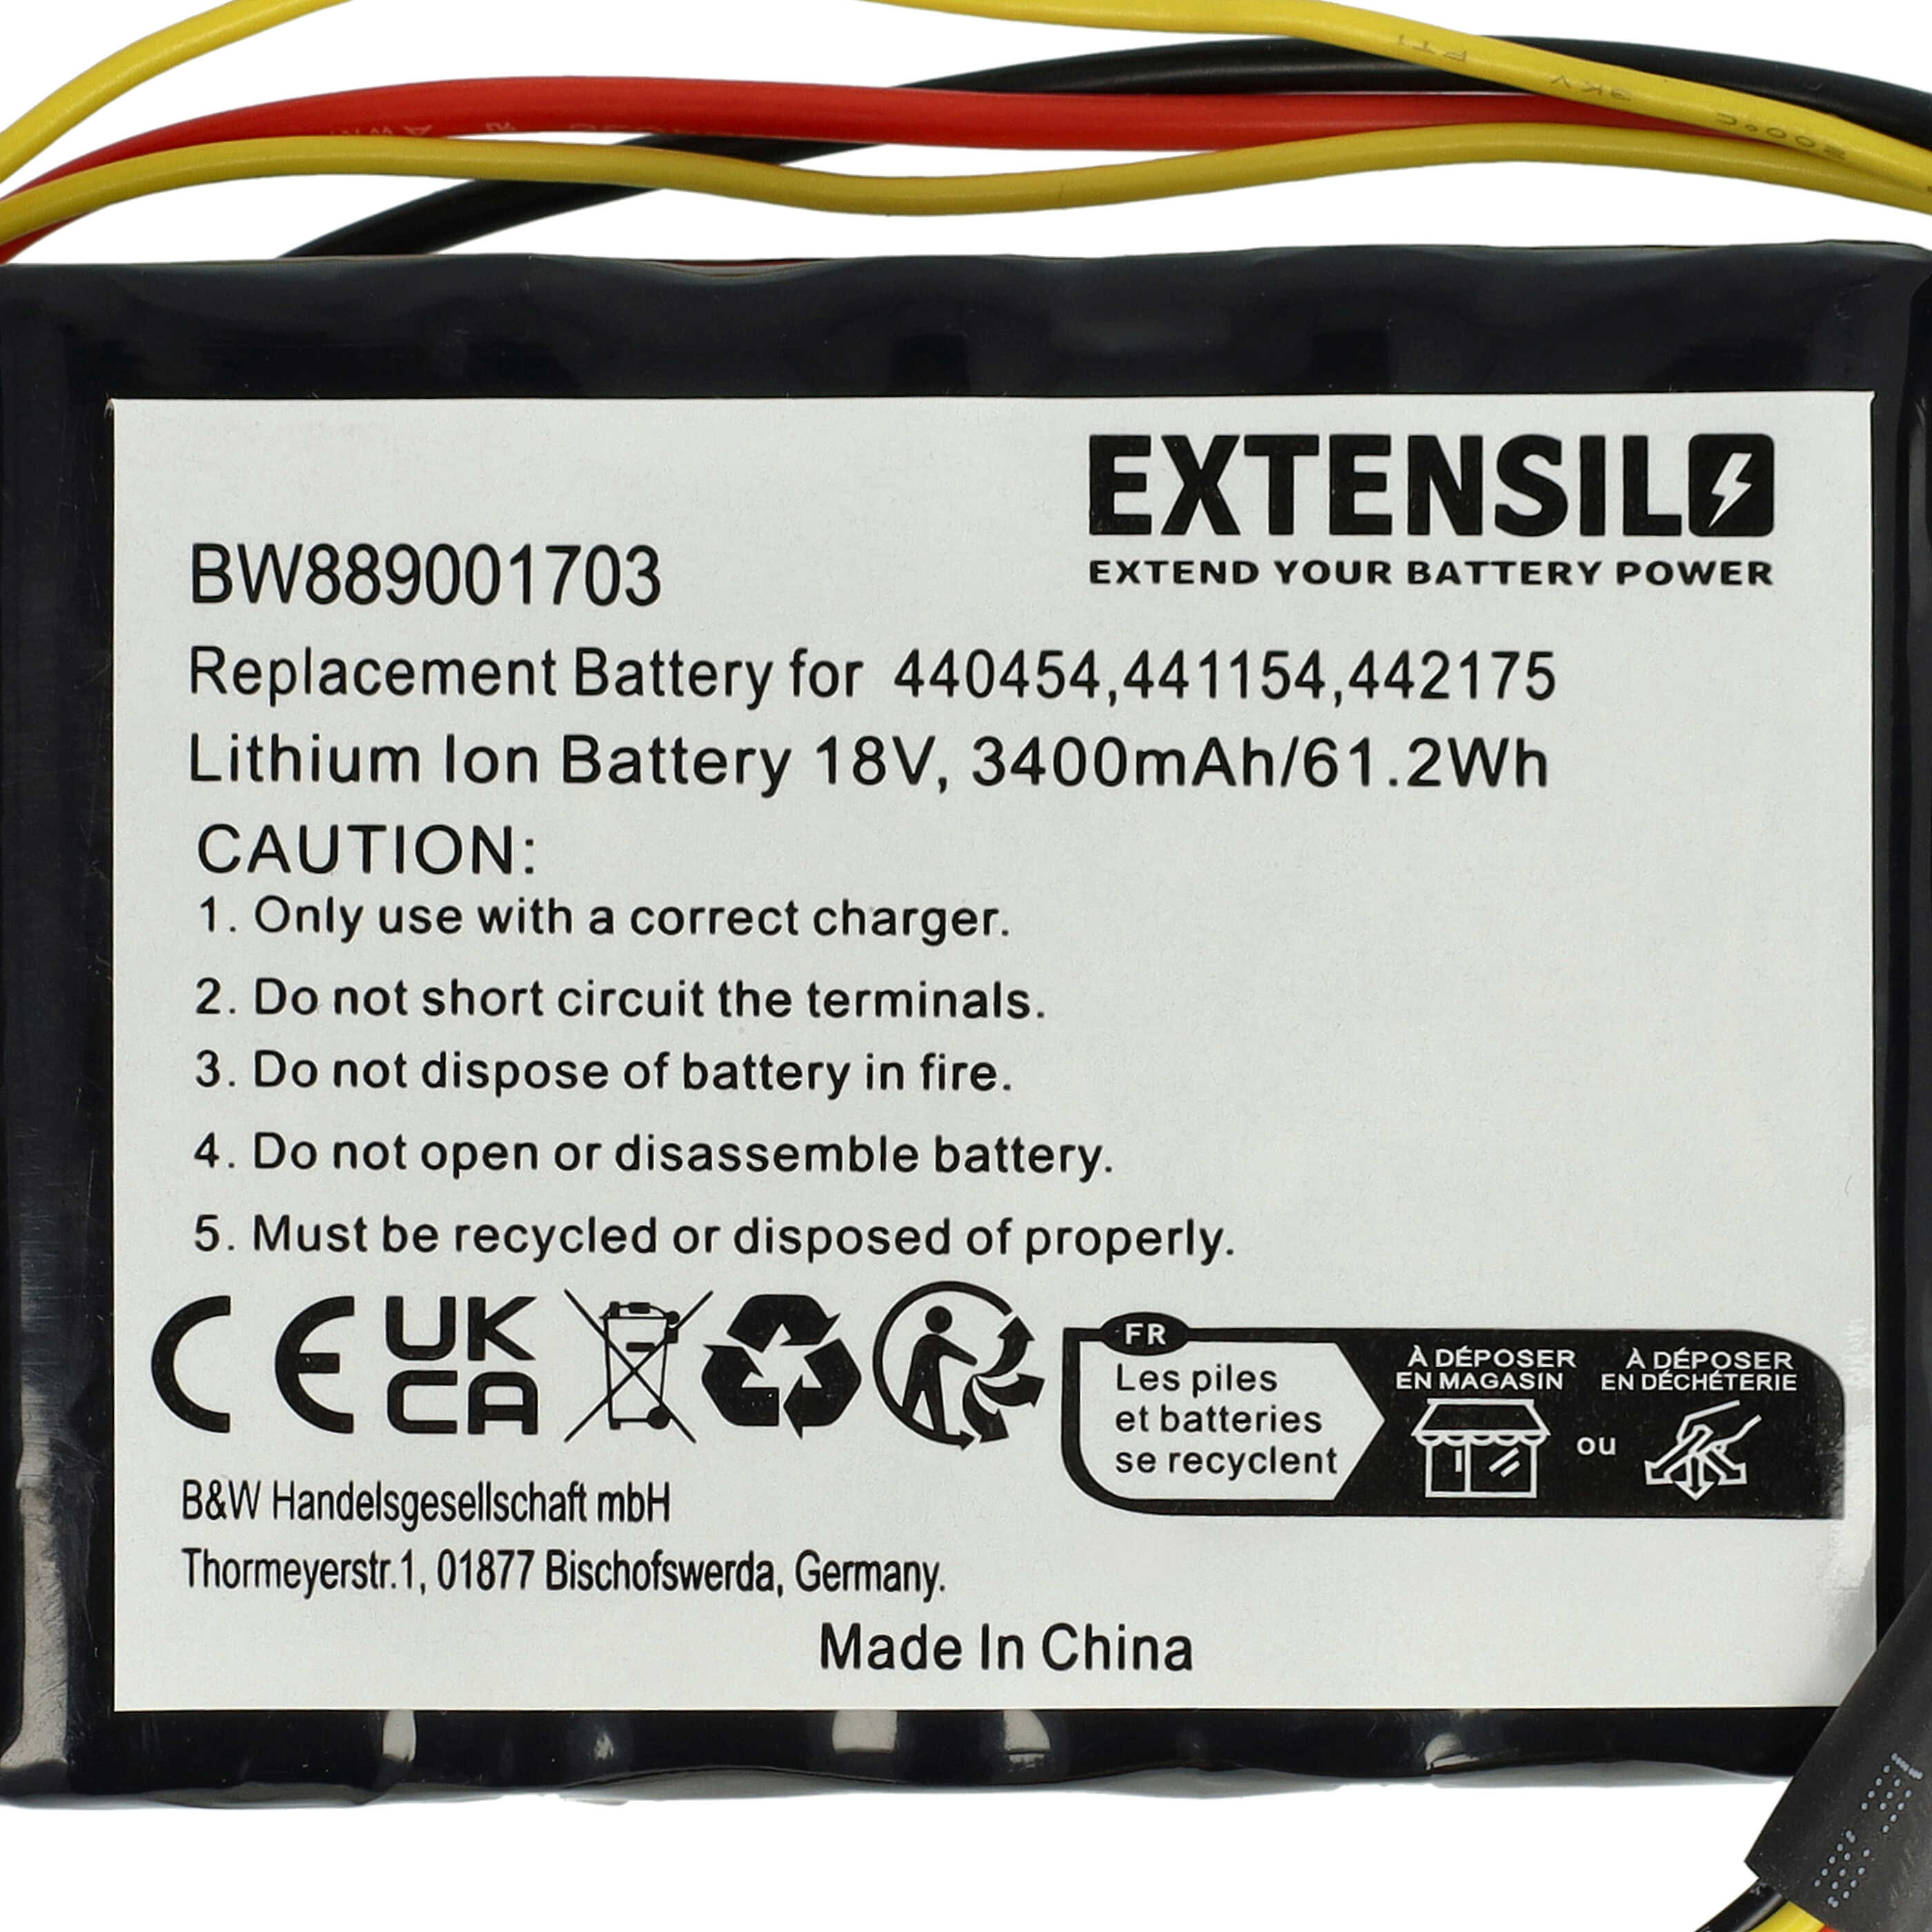 Batteria sostituisce Alko 440629, 440454, 441154 per dispositivo da giardinaggio Efco - 3400mAh 18V Li-Ion